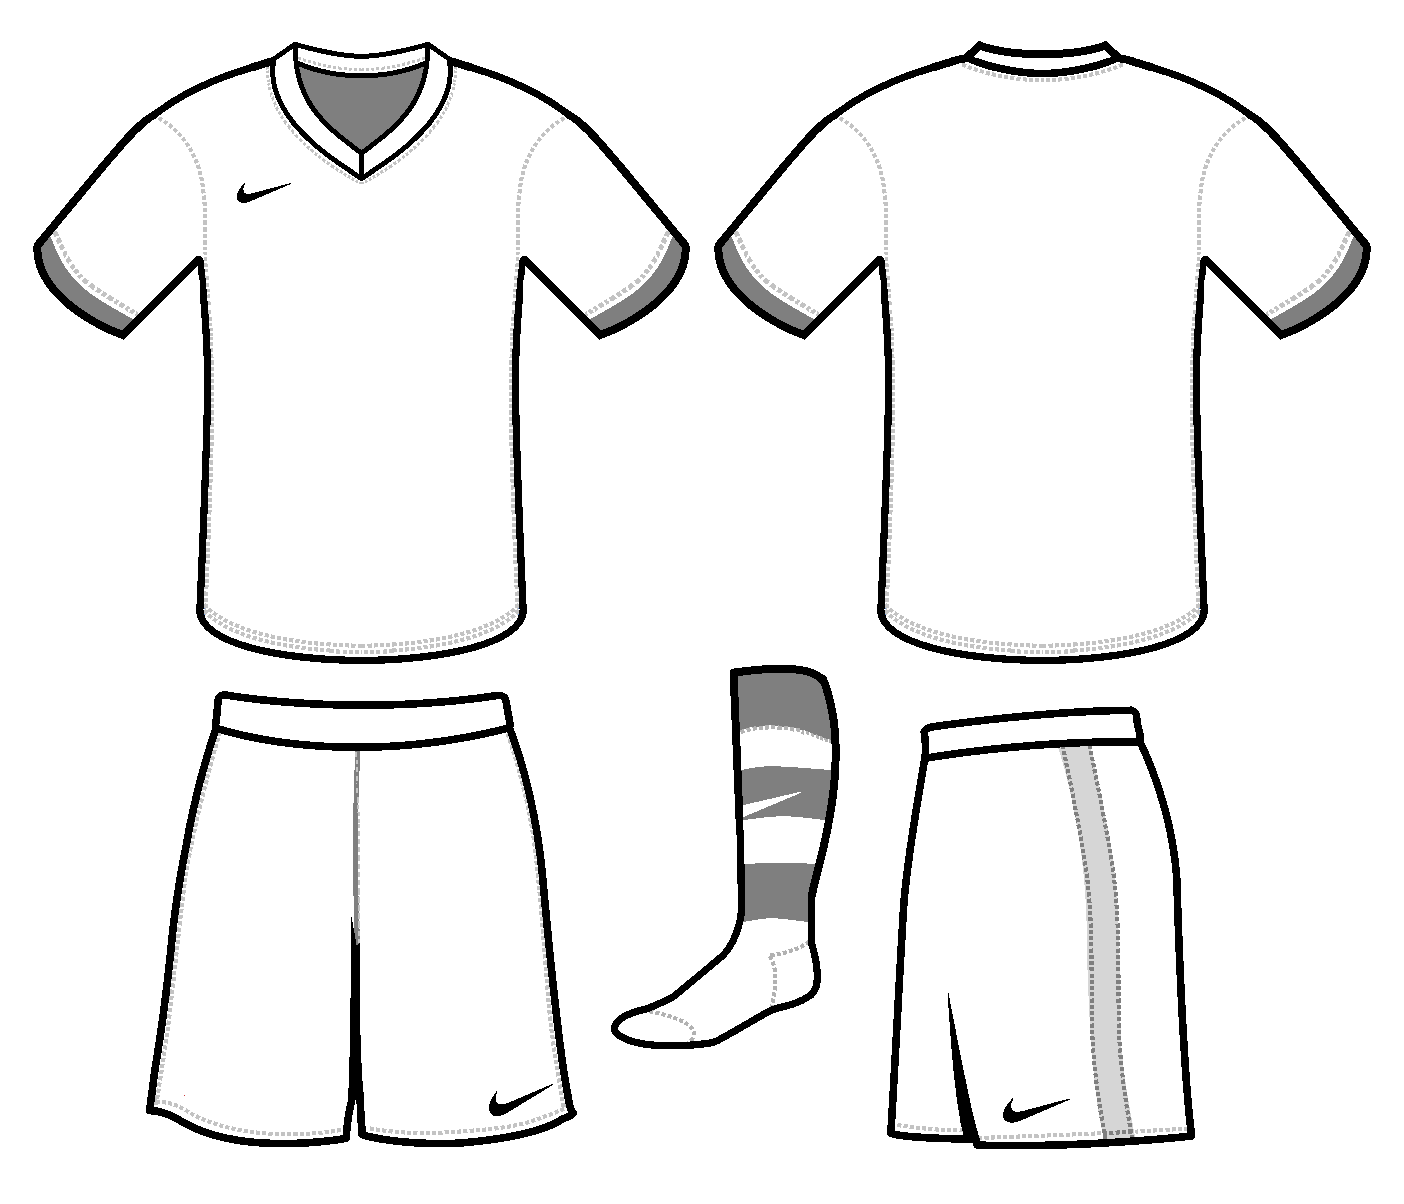 metropolitan-franje-kasteel-soccer-kit-psd-template-free-zebra